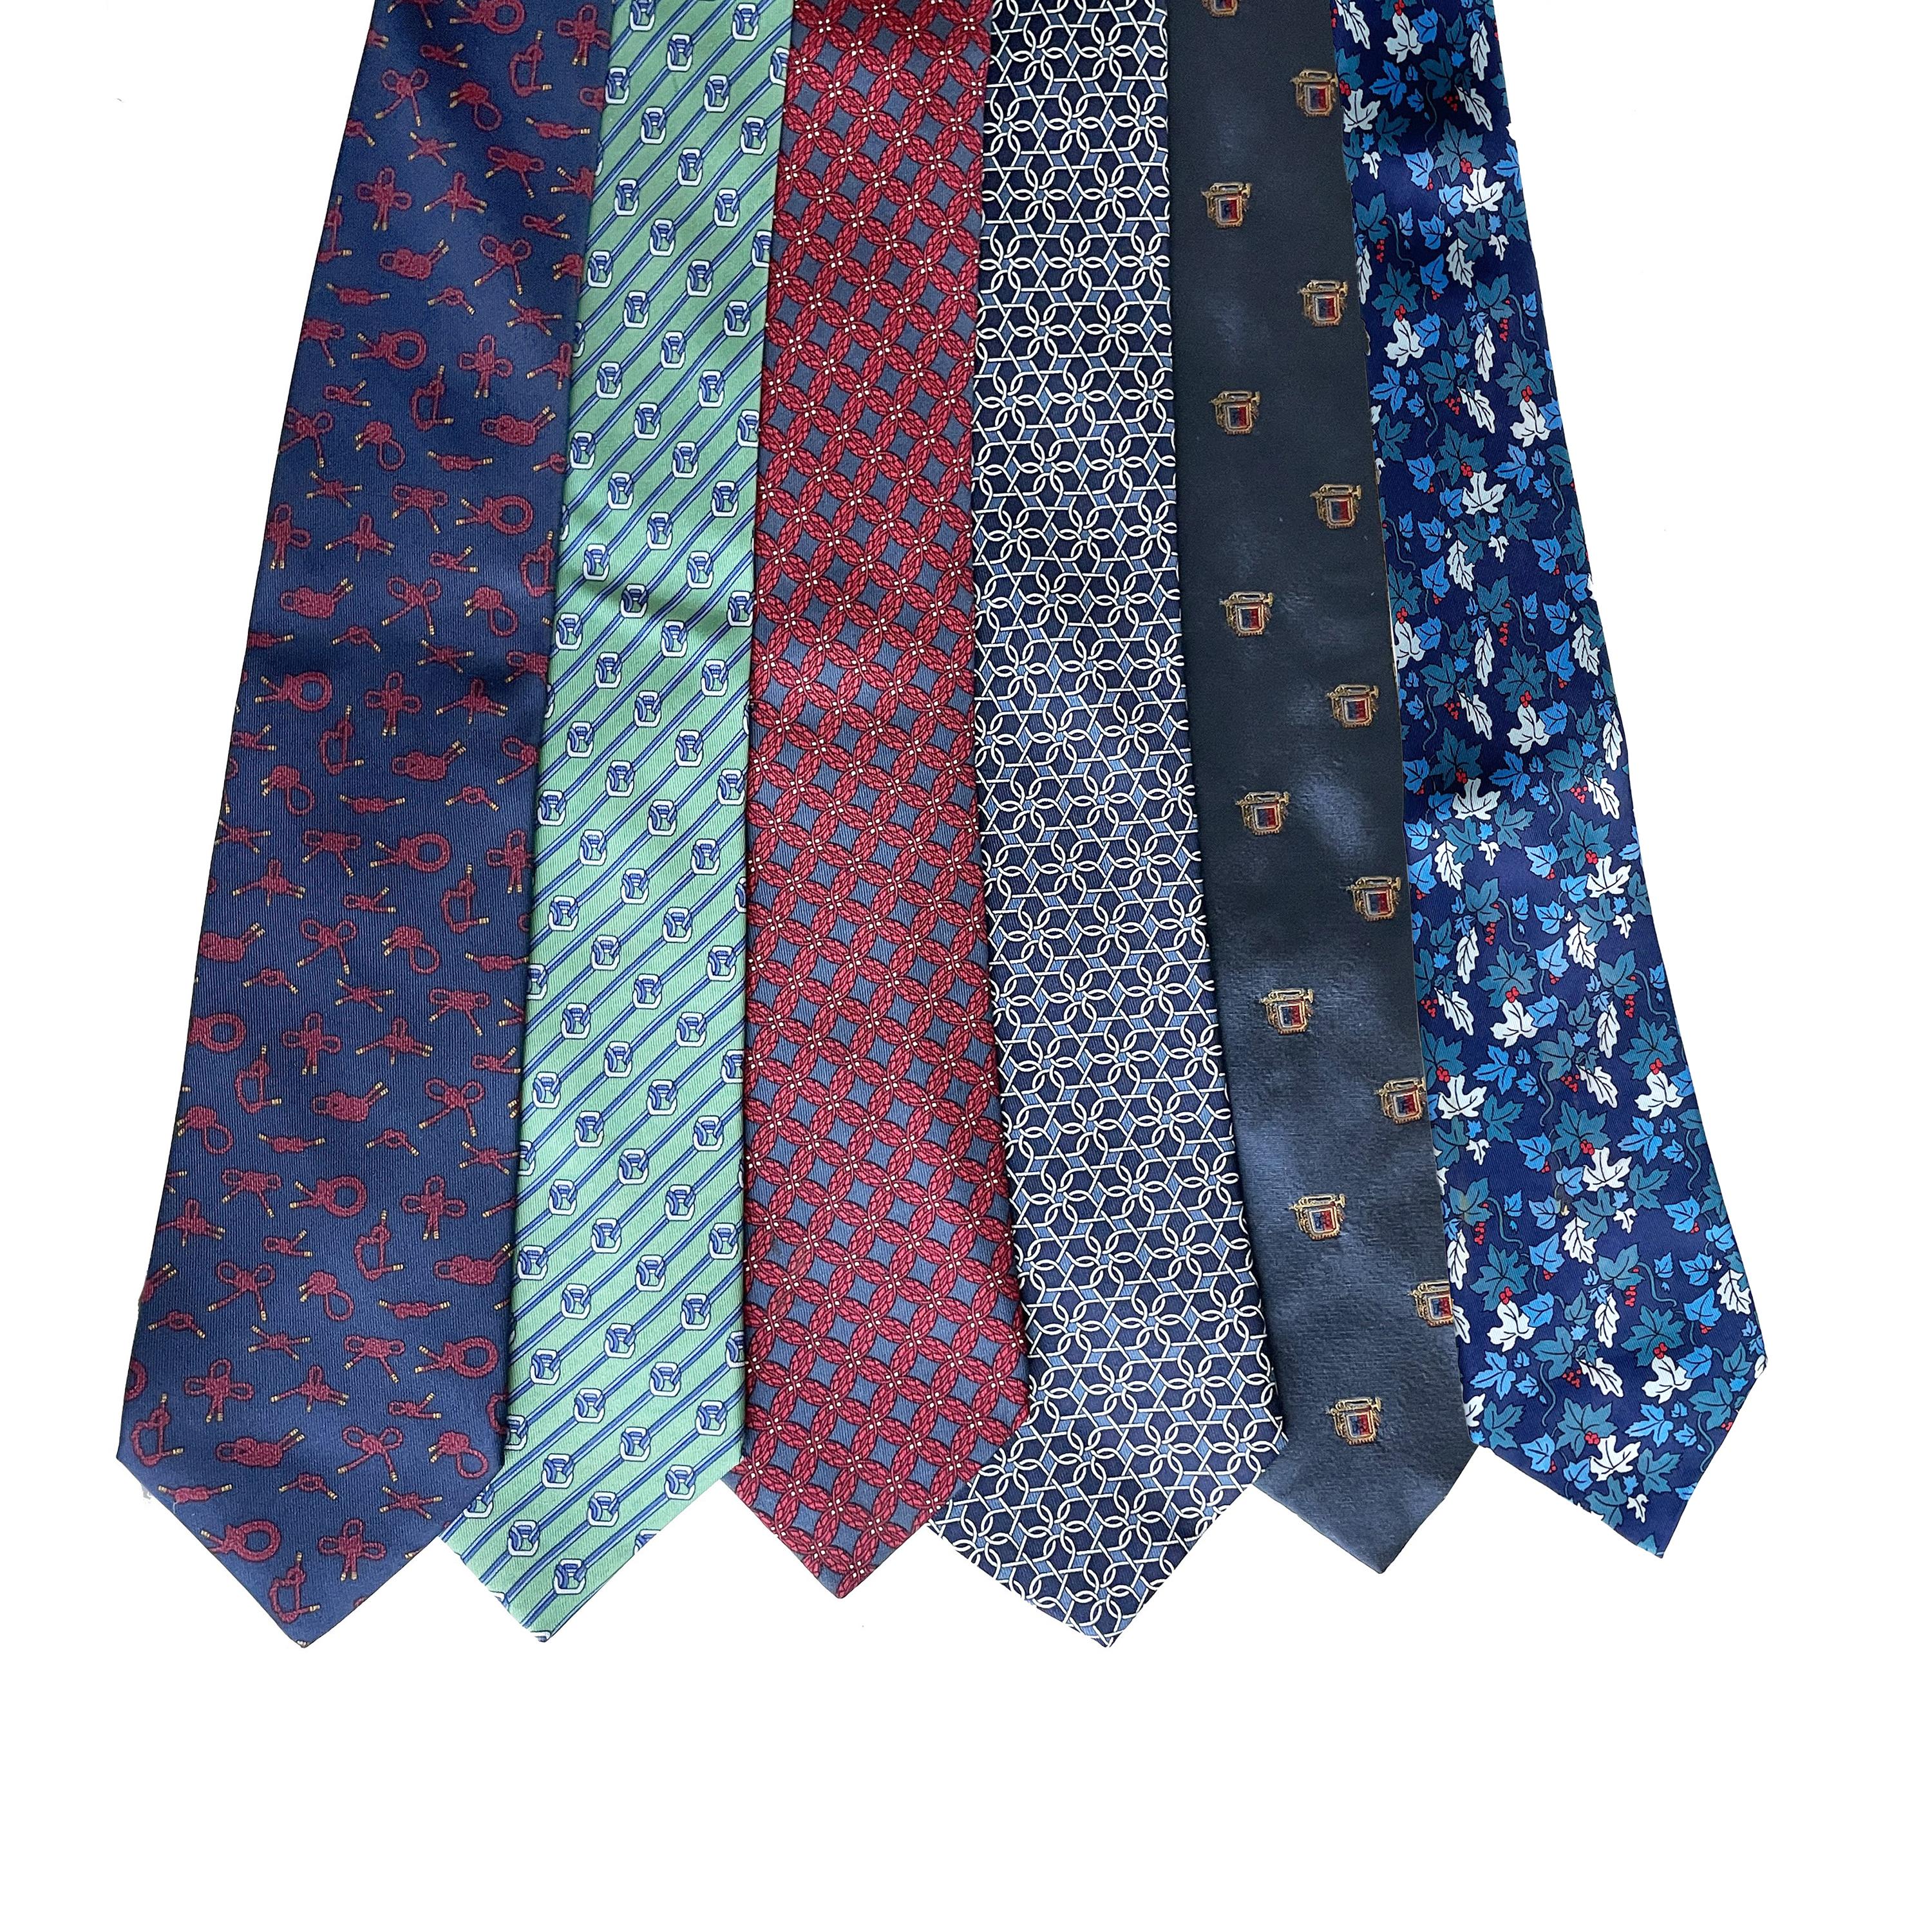 Women's or Men's Hermes Necktie Lot of 34 Ties Mens Luxury Silk Rare Vintage Patterns